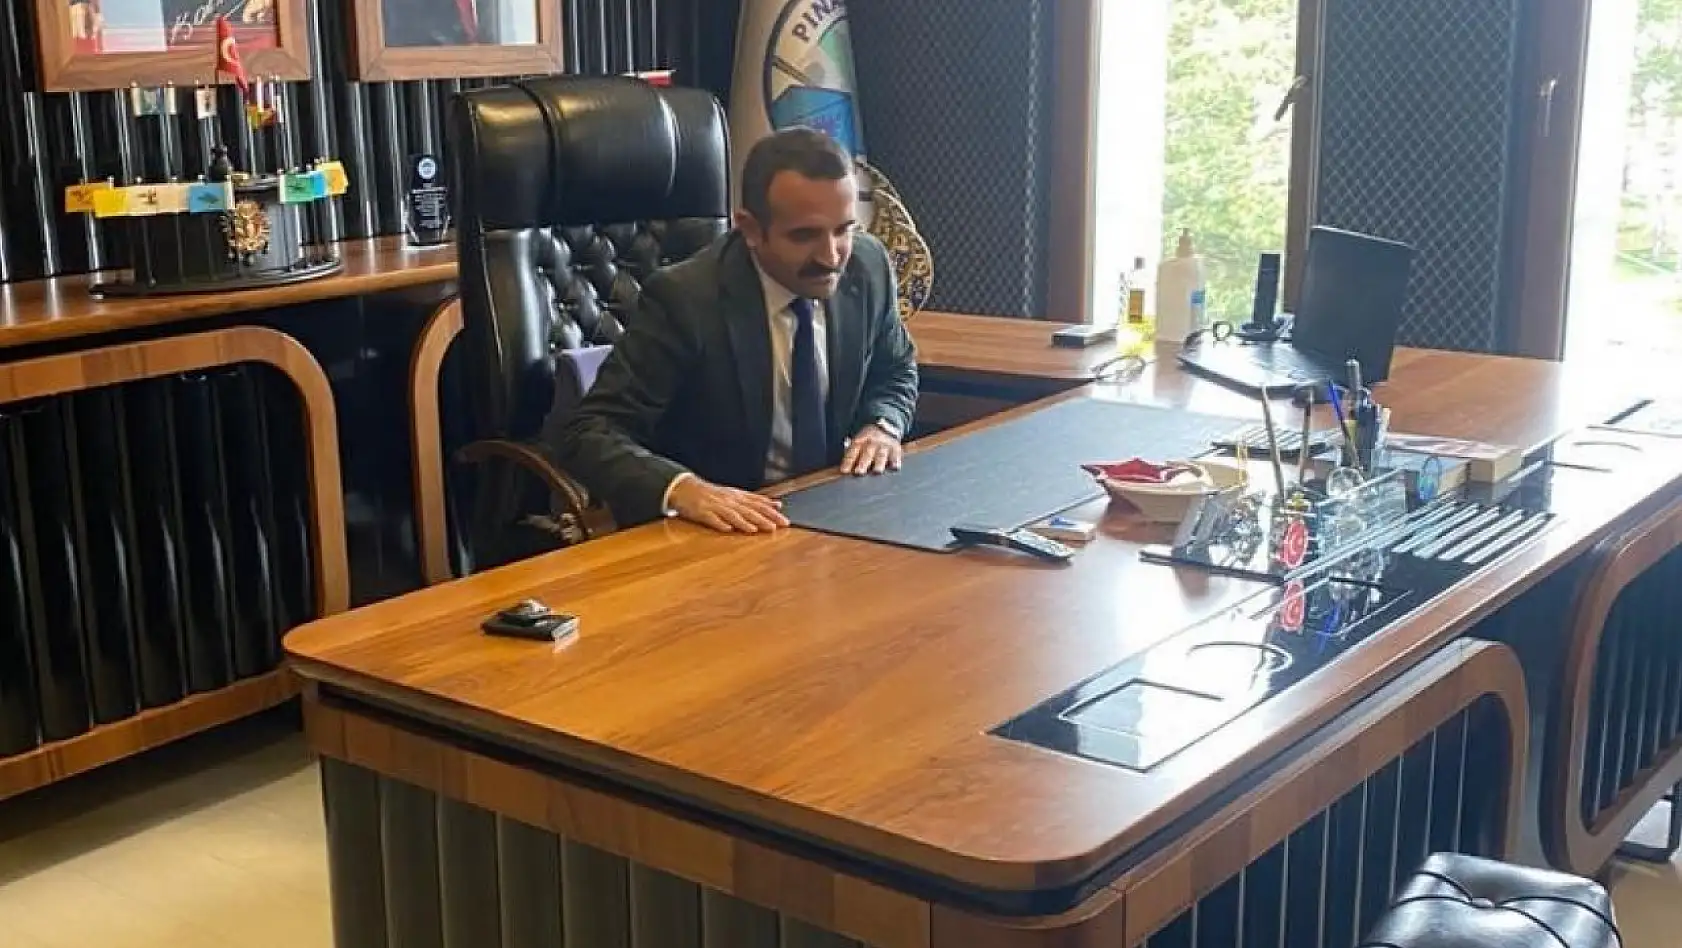 Pınarbaşı Belediye Başkanlığı'na Tekeş görevlendirildi